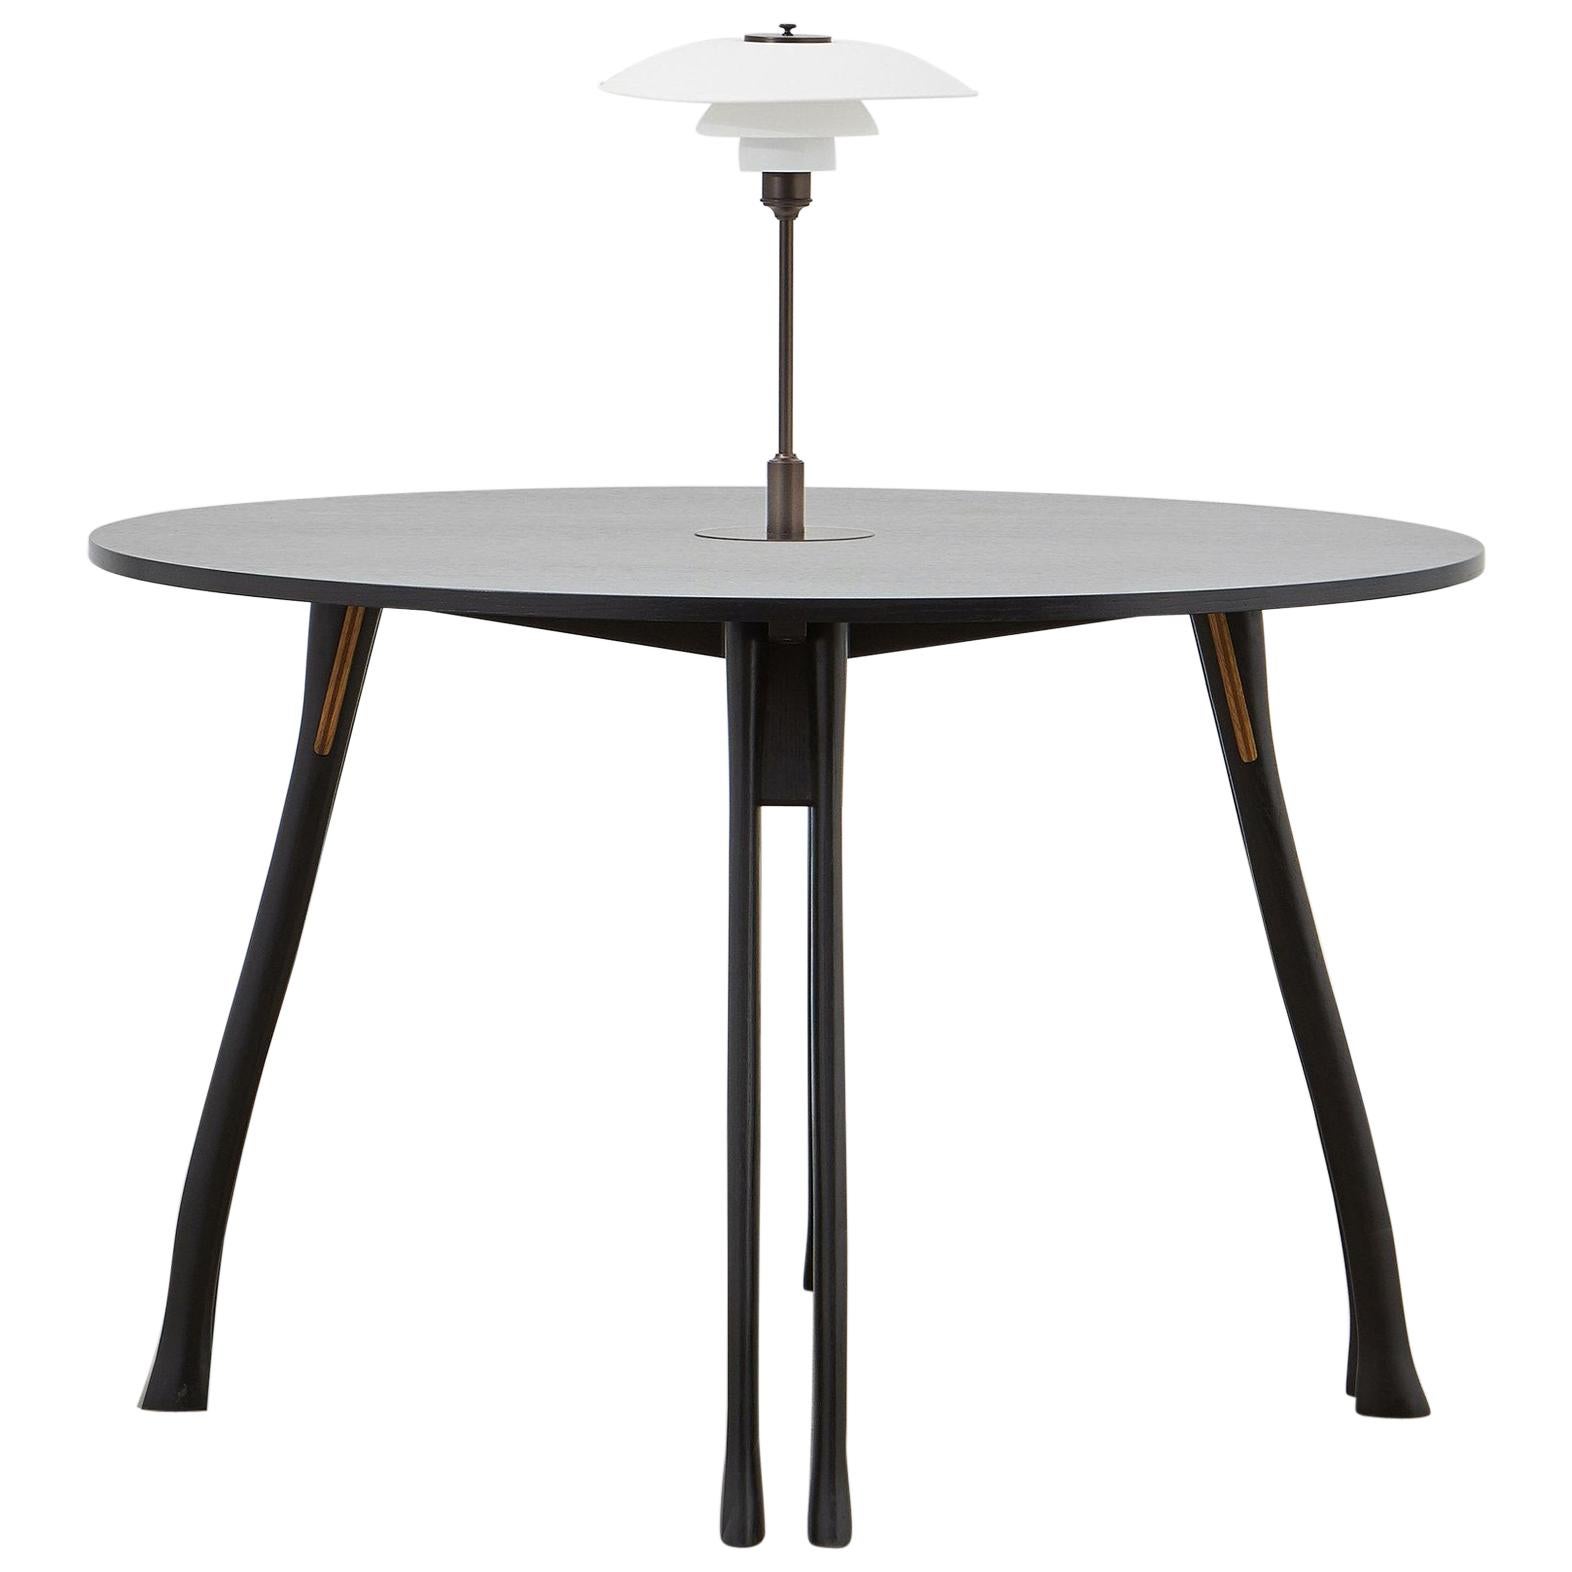 PH Axe Table, black oak legs, veneer table plate, white PH 3 ½ - 2 ½ lamp For Sale